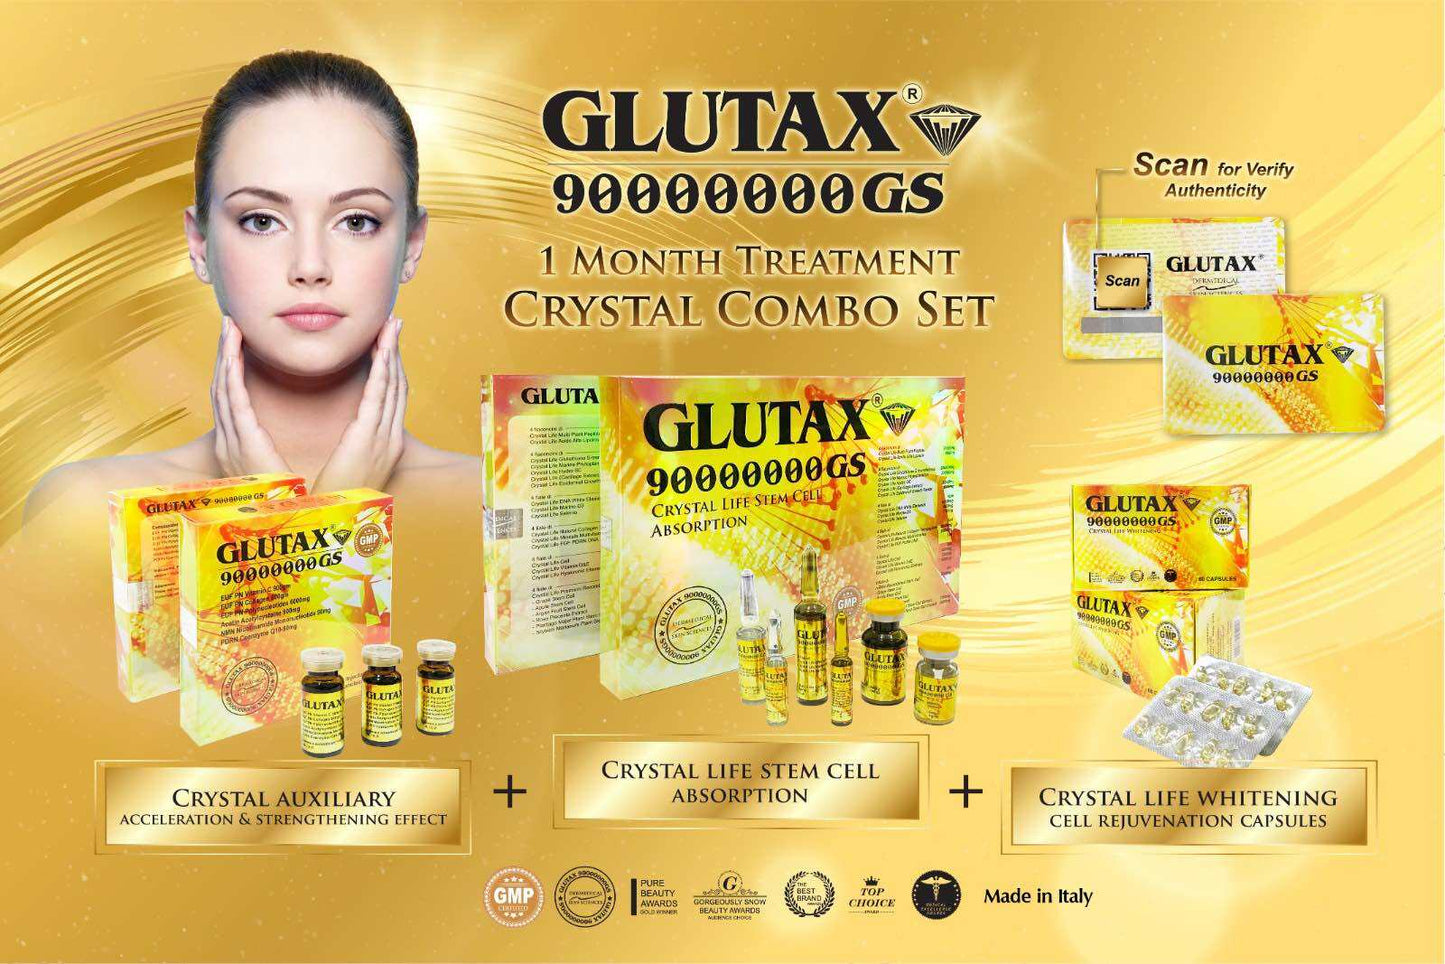 Glutax 90000000GS